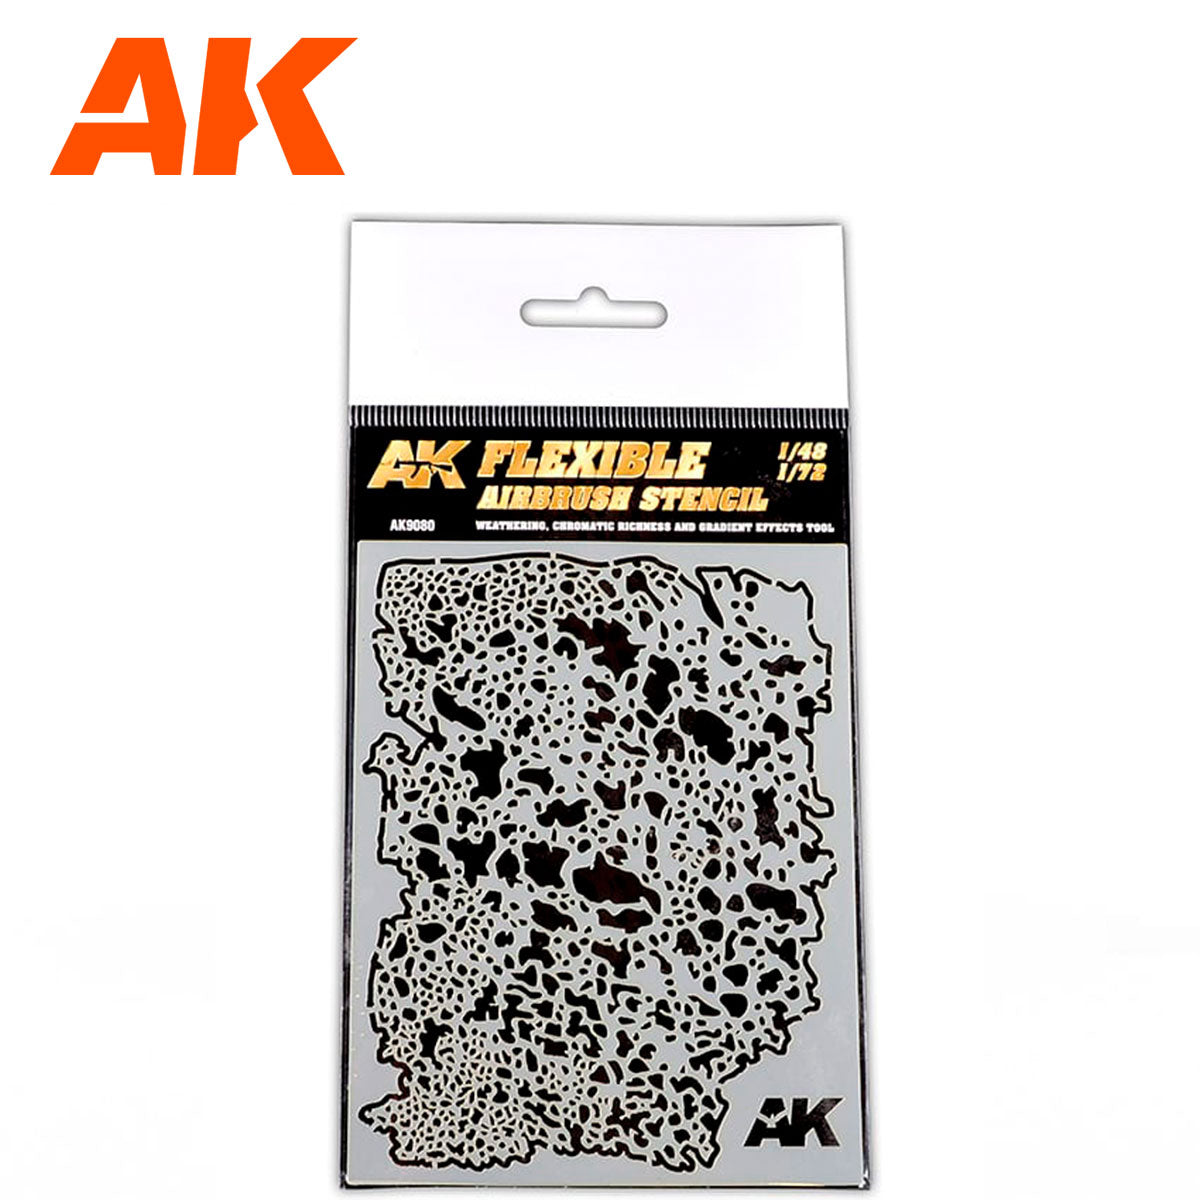 AK Flexible airbrush stencil 1/48 – 1/72